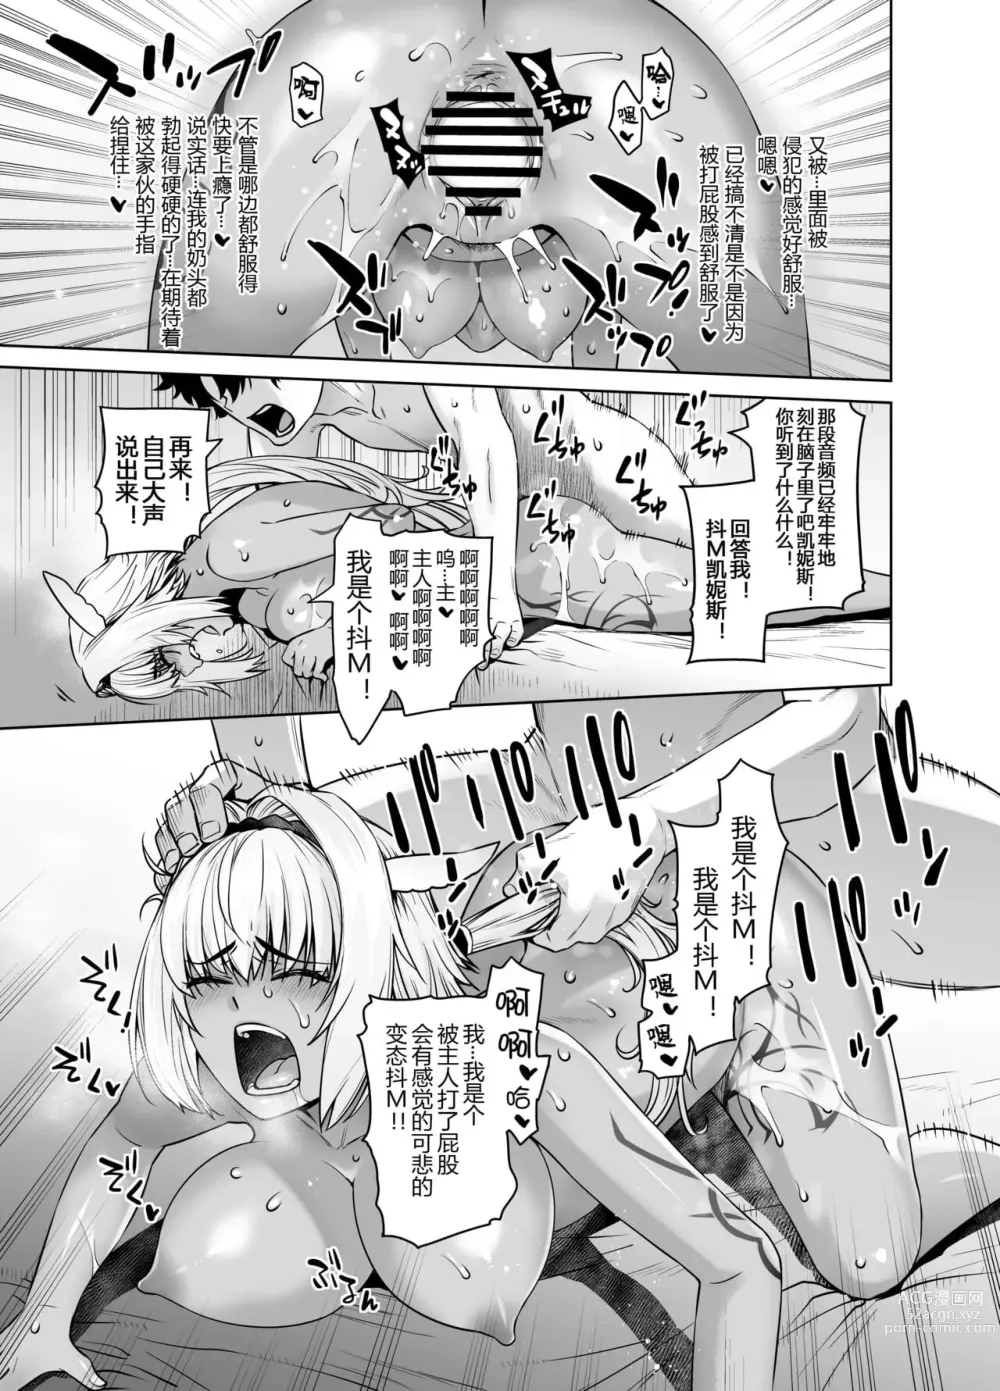 Page 391 of doujinshi HEAVEN’S DRIVE 1-12